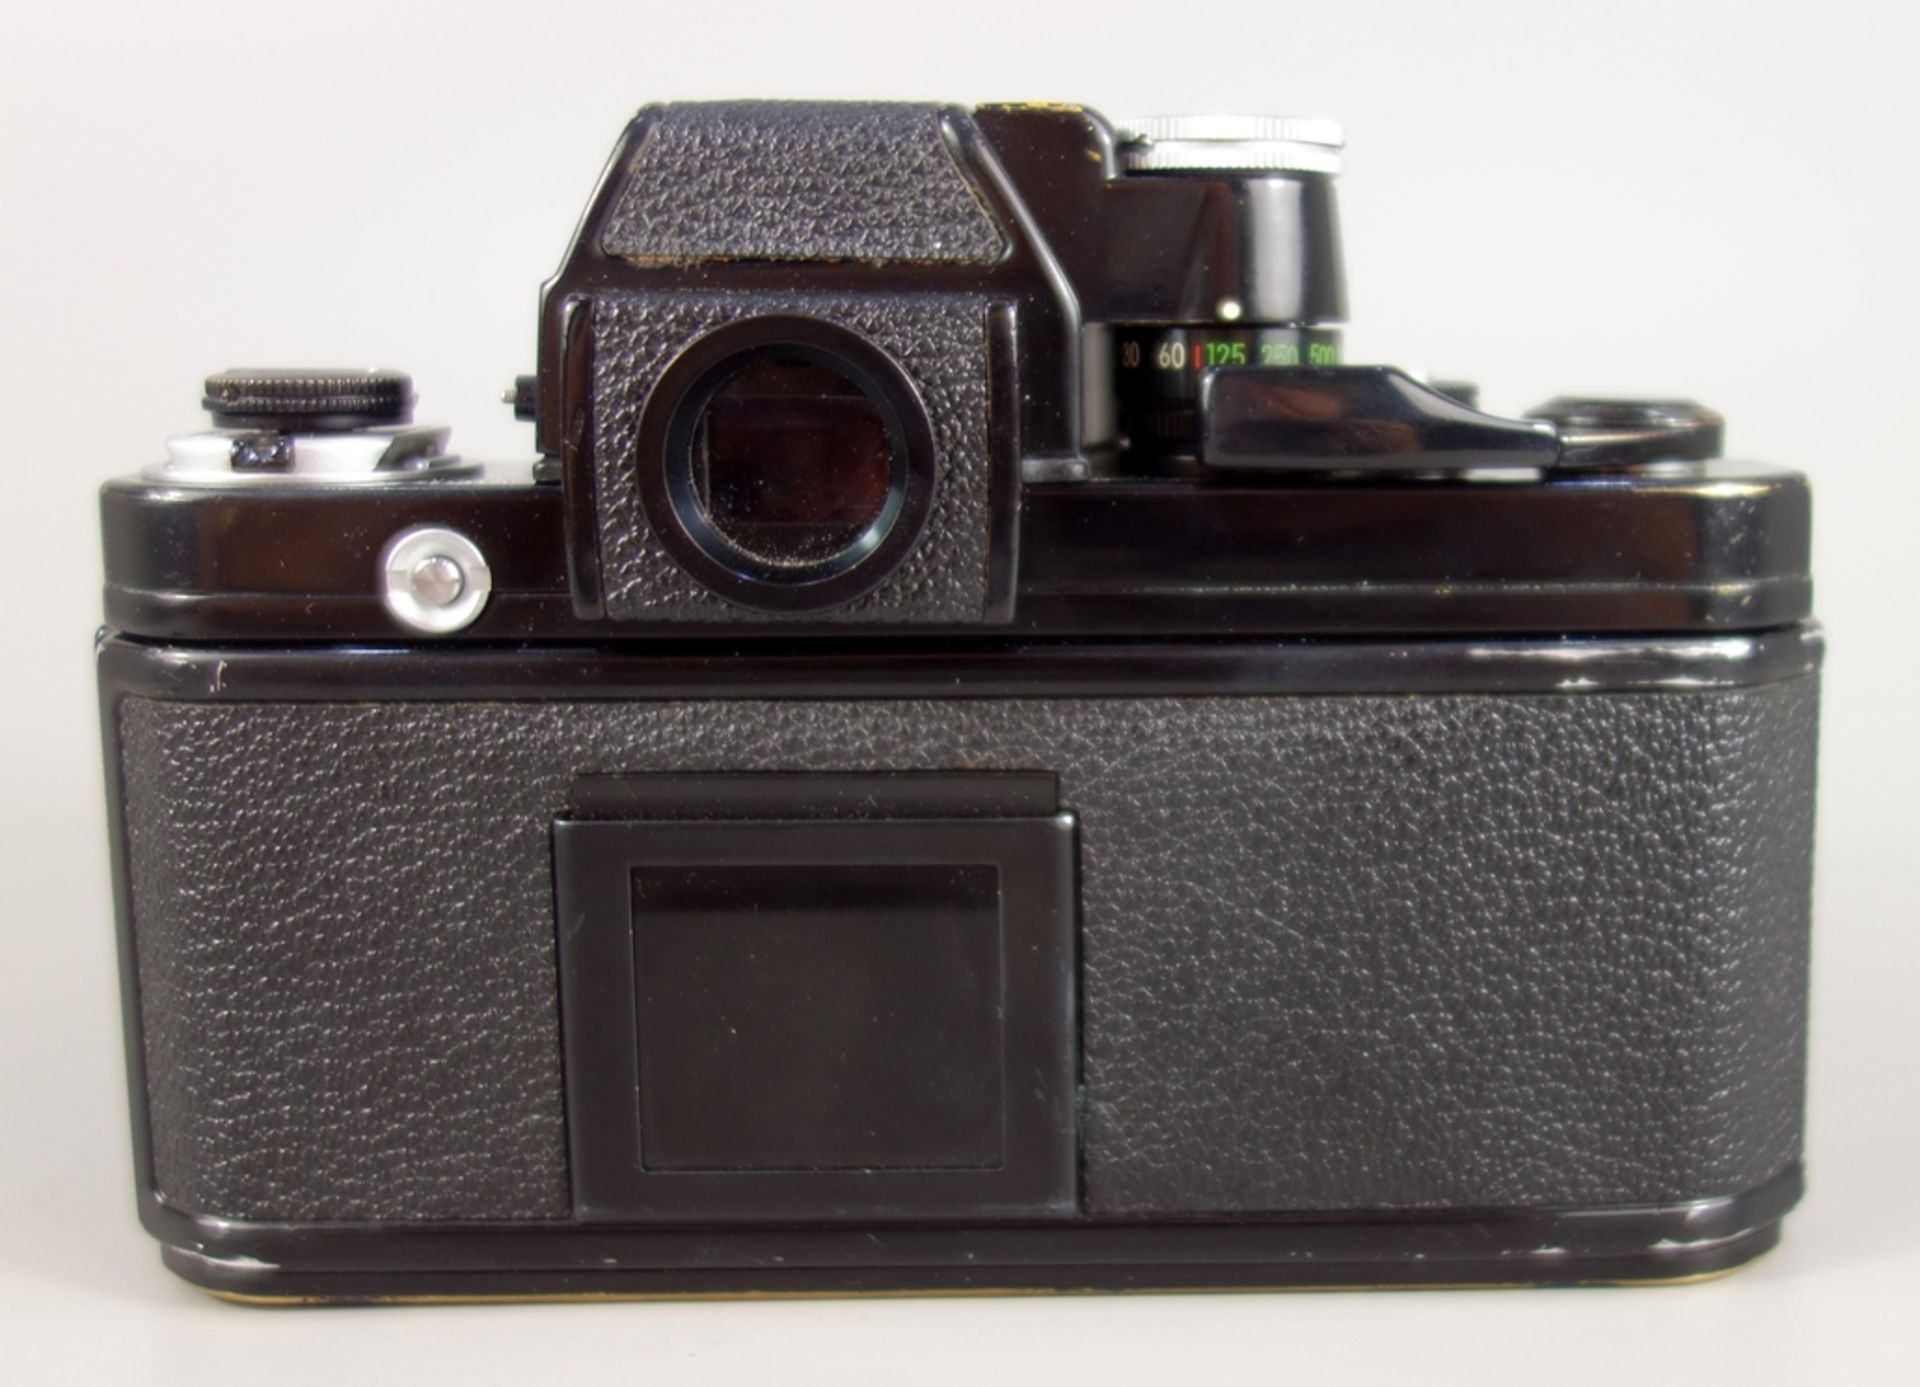 Nikon F2 Photomic, Spiegelreflexkamera, schwarz, 1970er Jahre, Serien-Nr. 7240495, mit Objektiv - Image 3 of 5